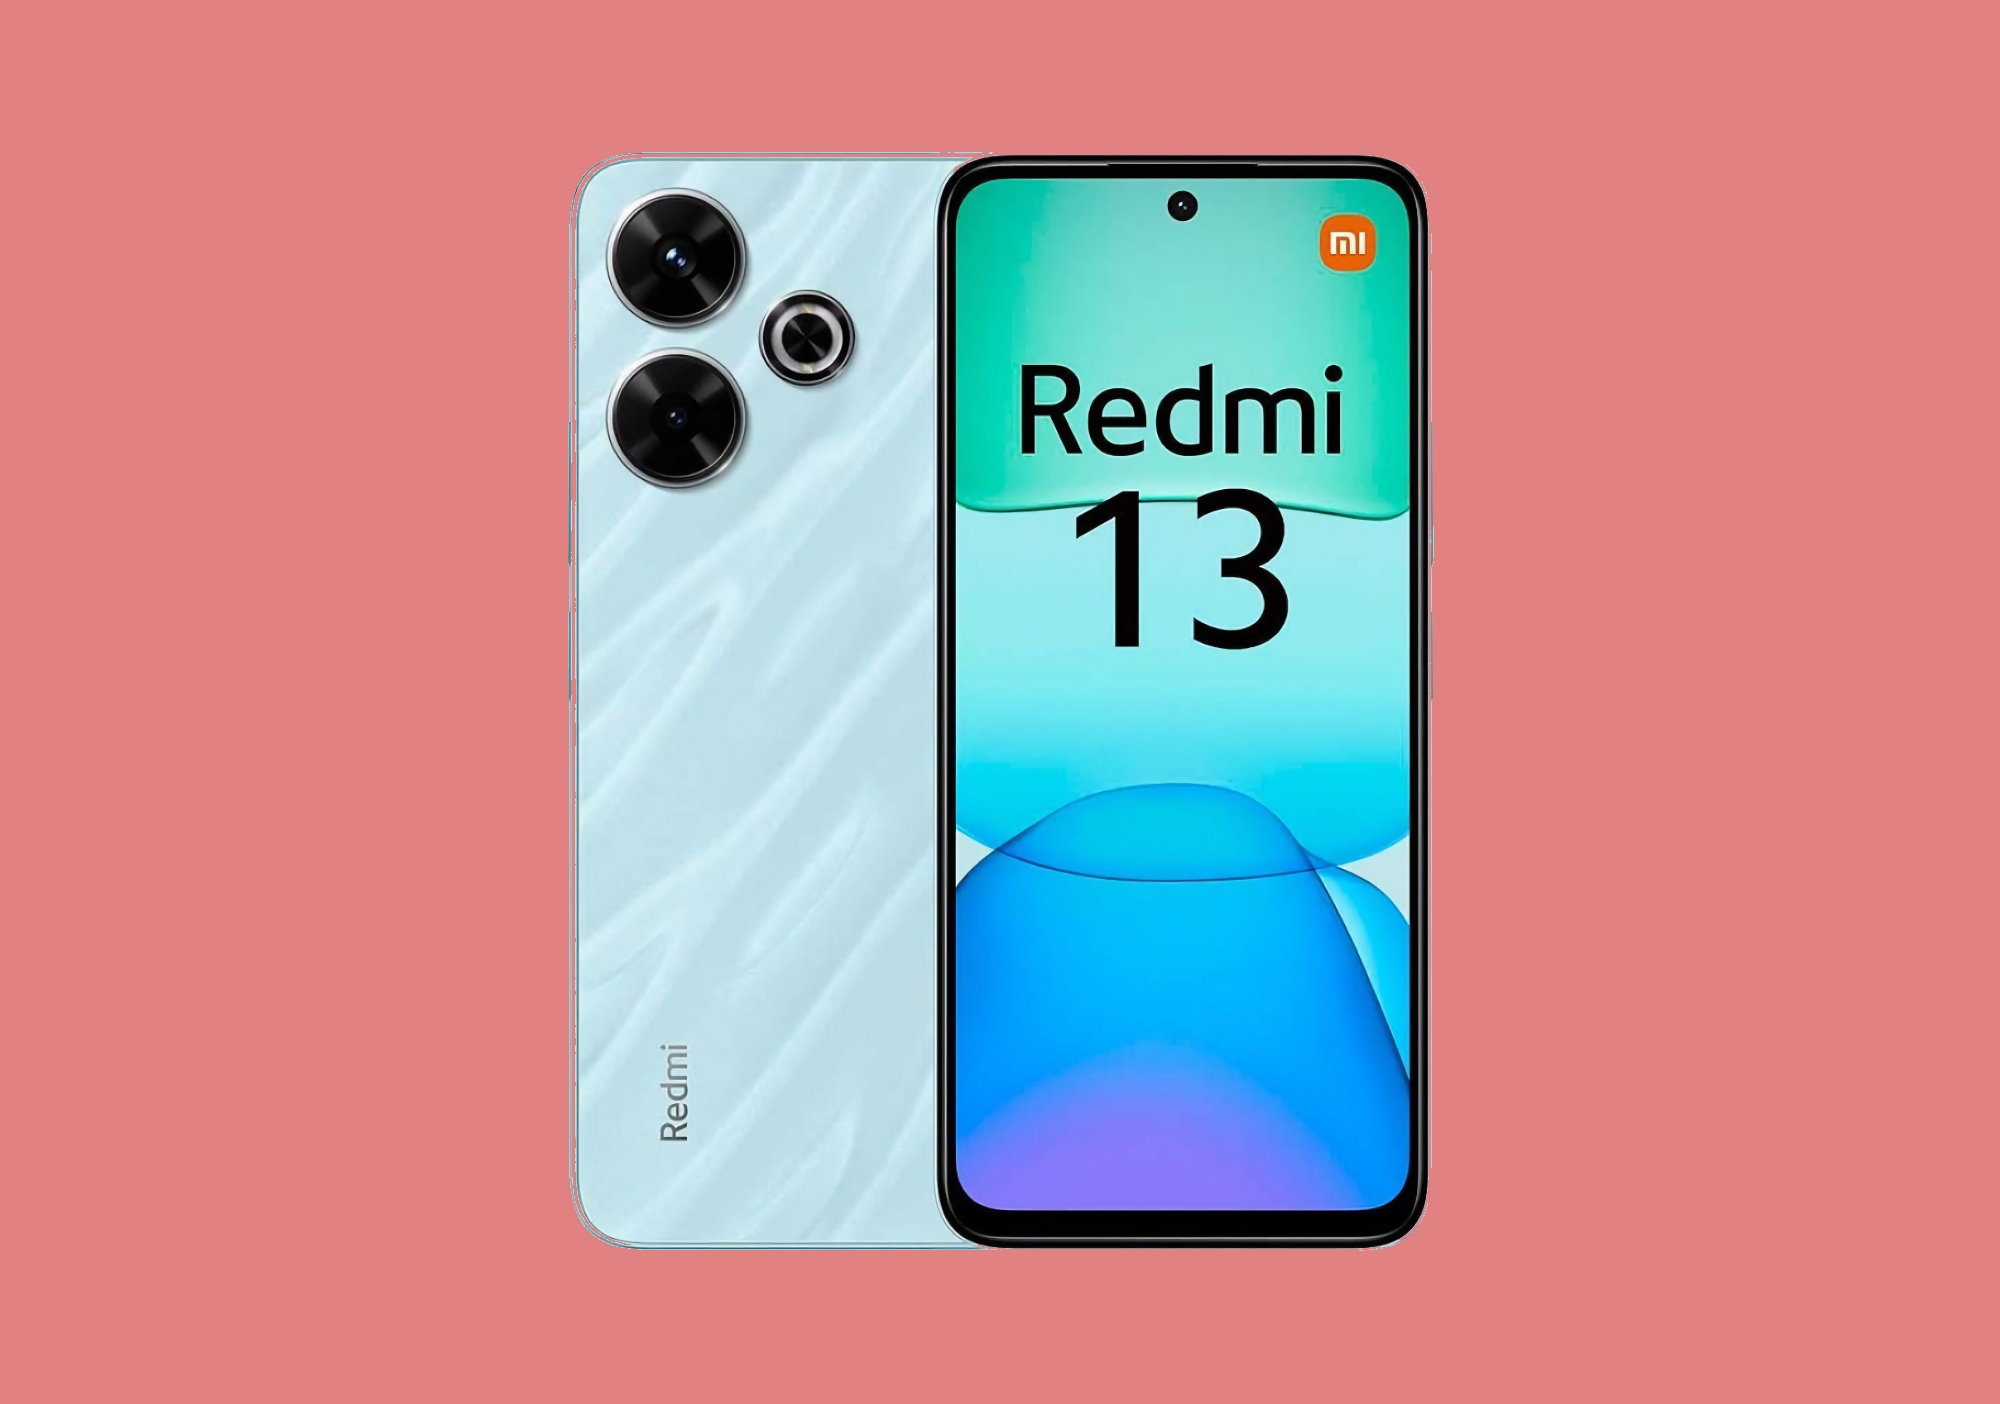 Xiaomi har presenterat Redmi 13 4G med MediaTek Helio G91 Ultra-chip och en 108 MP-kamera